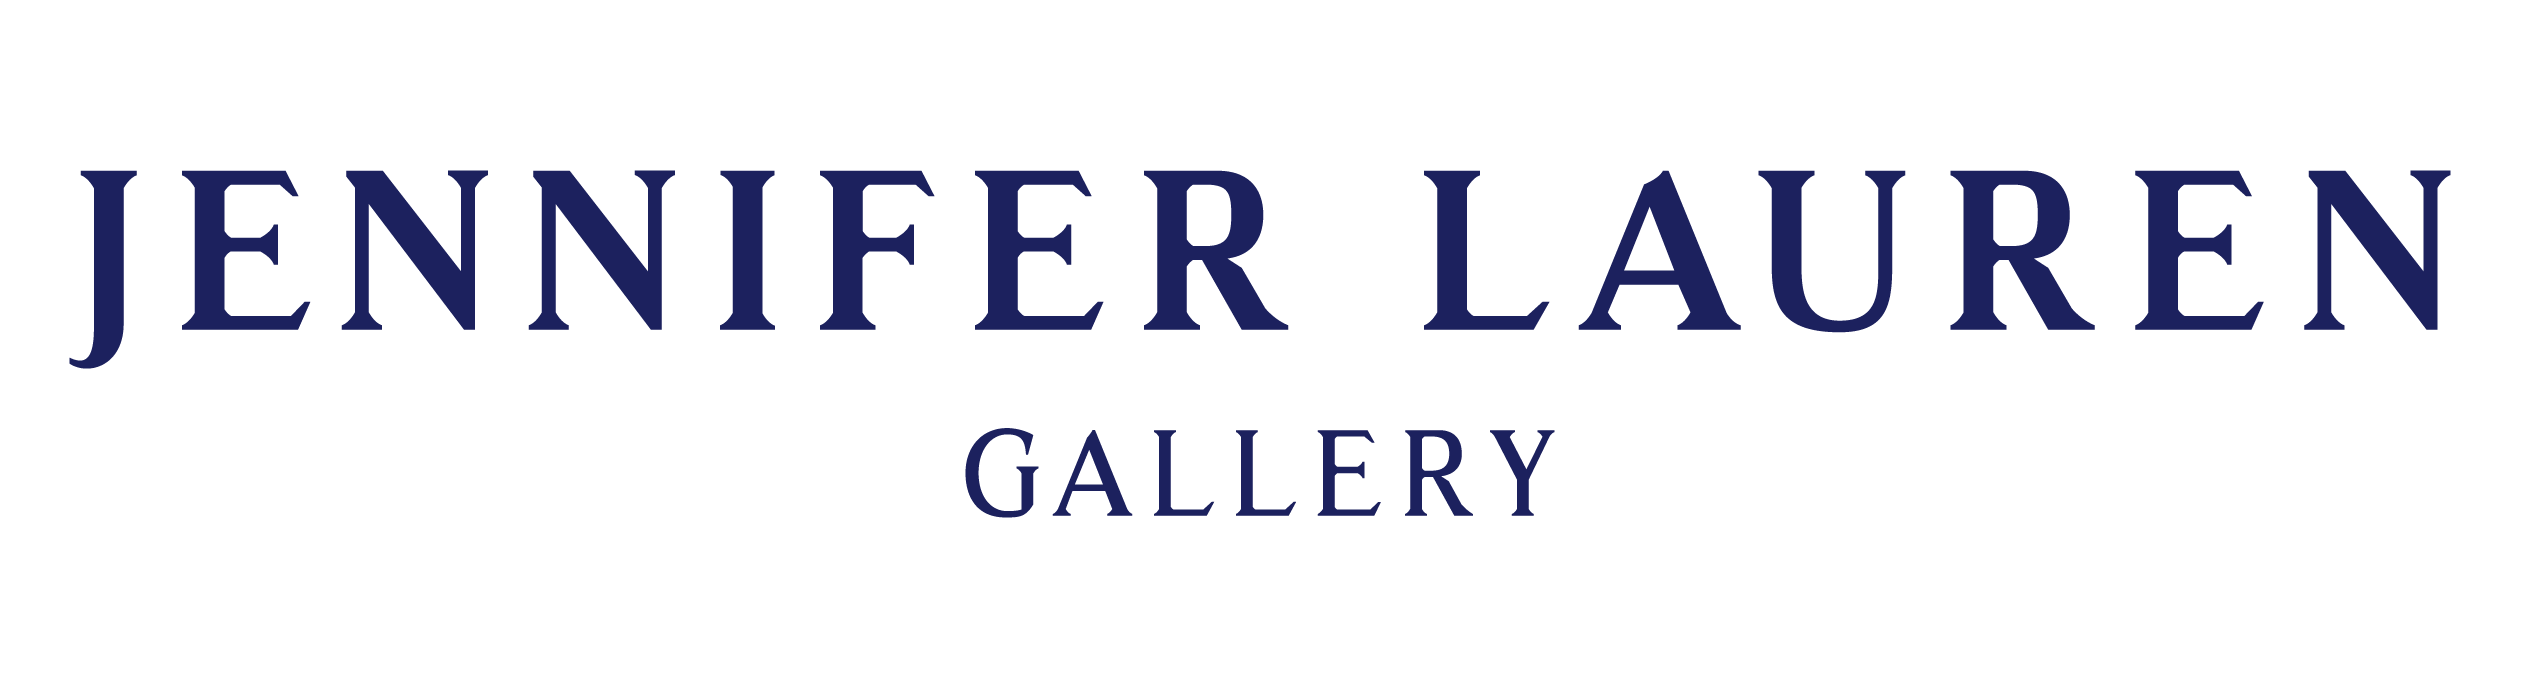 Jennifer Lauren Gallery